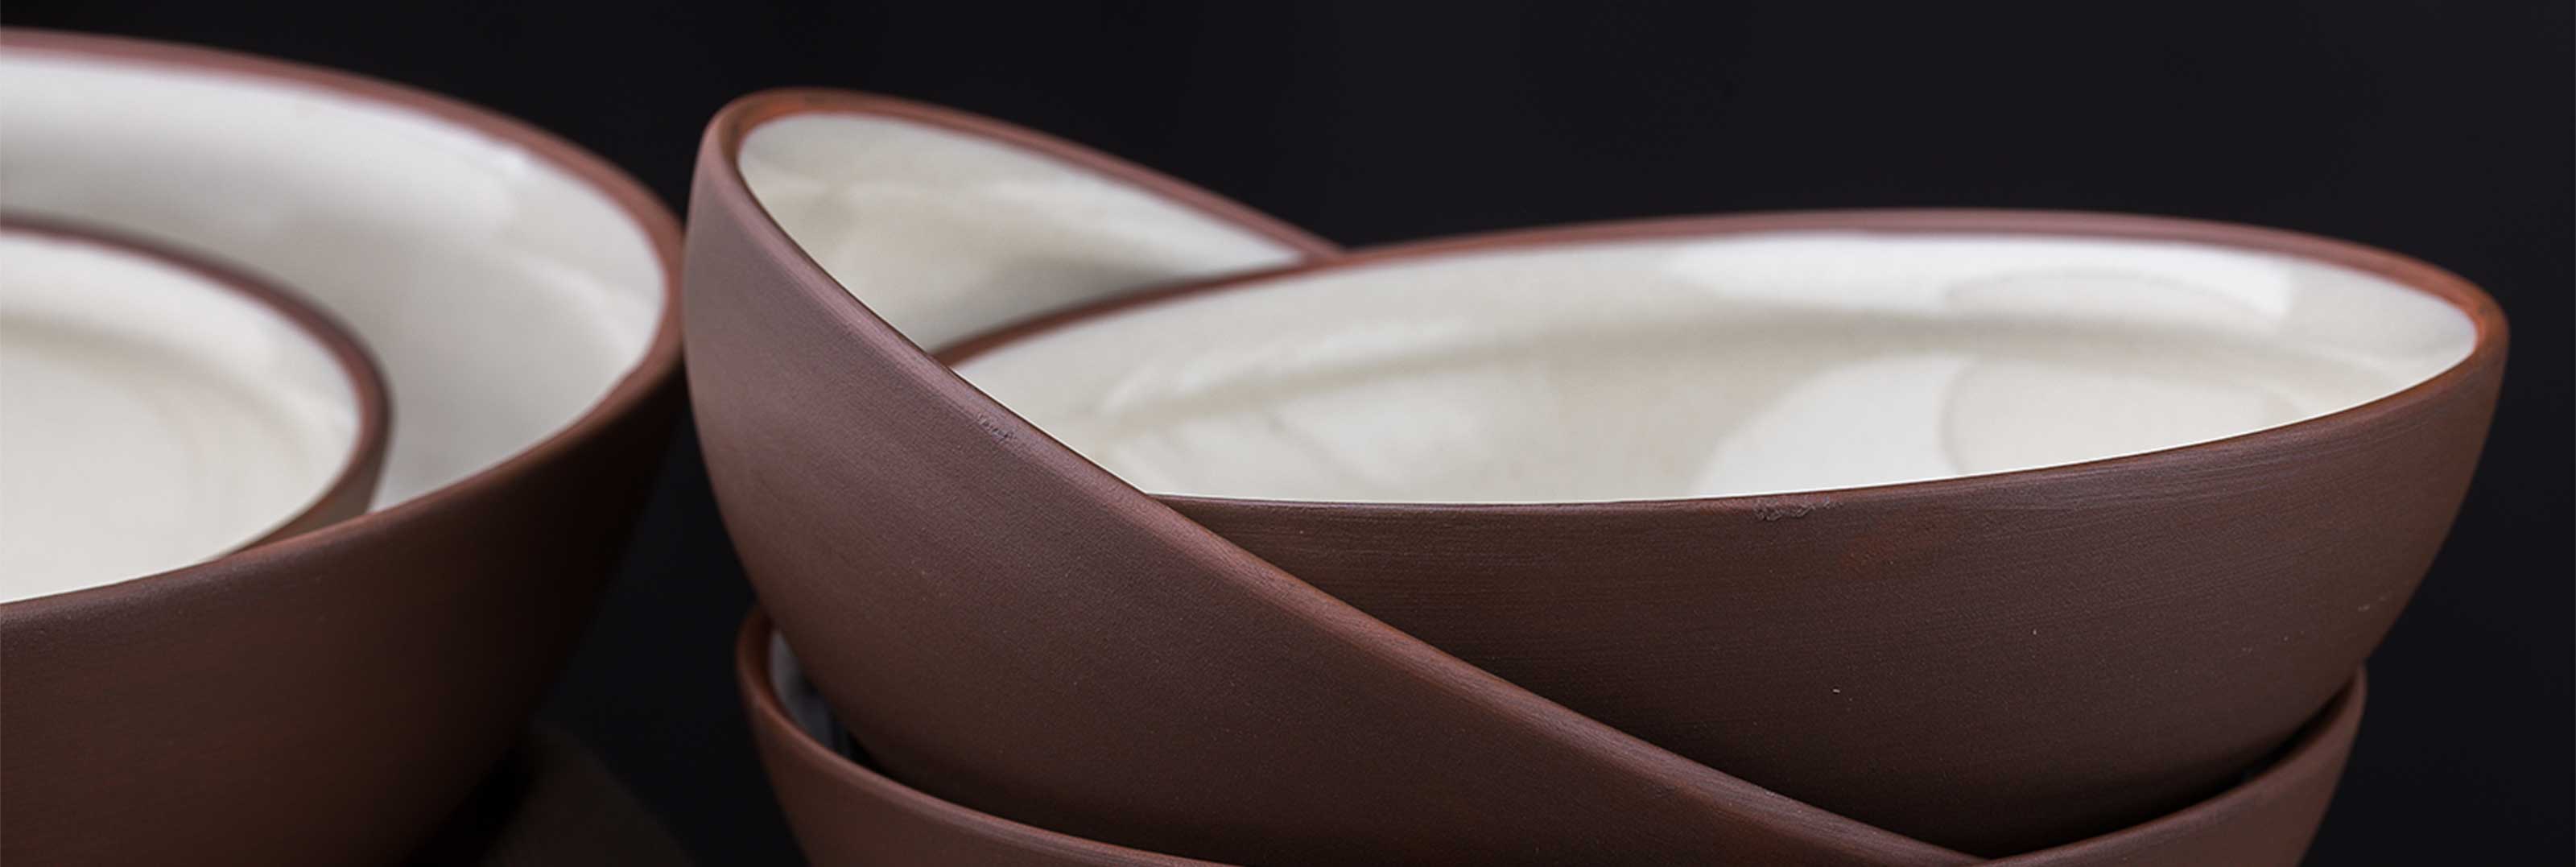 Clay bowl close-up